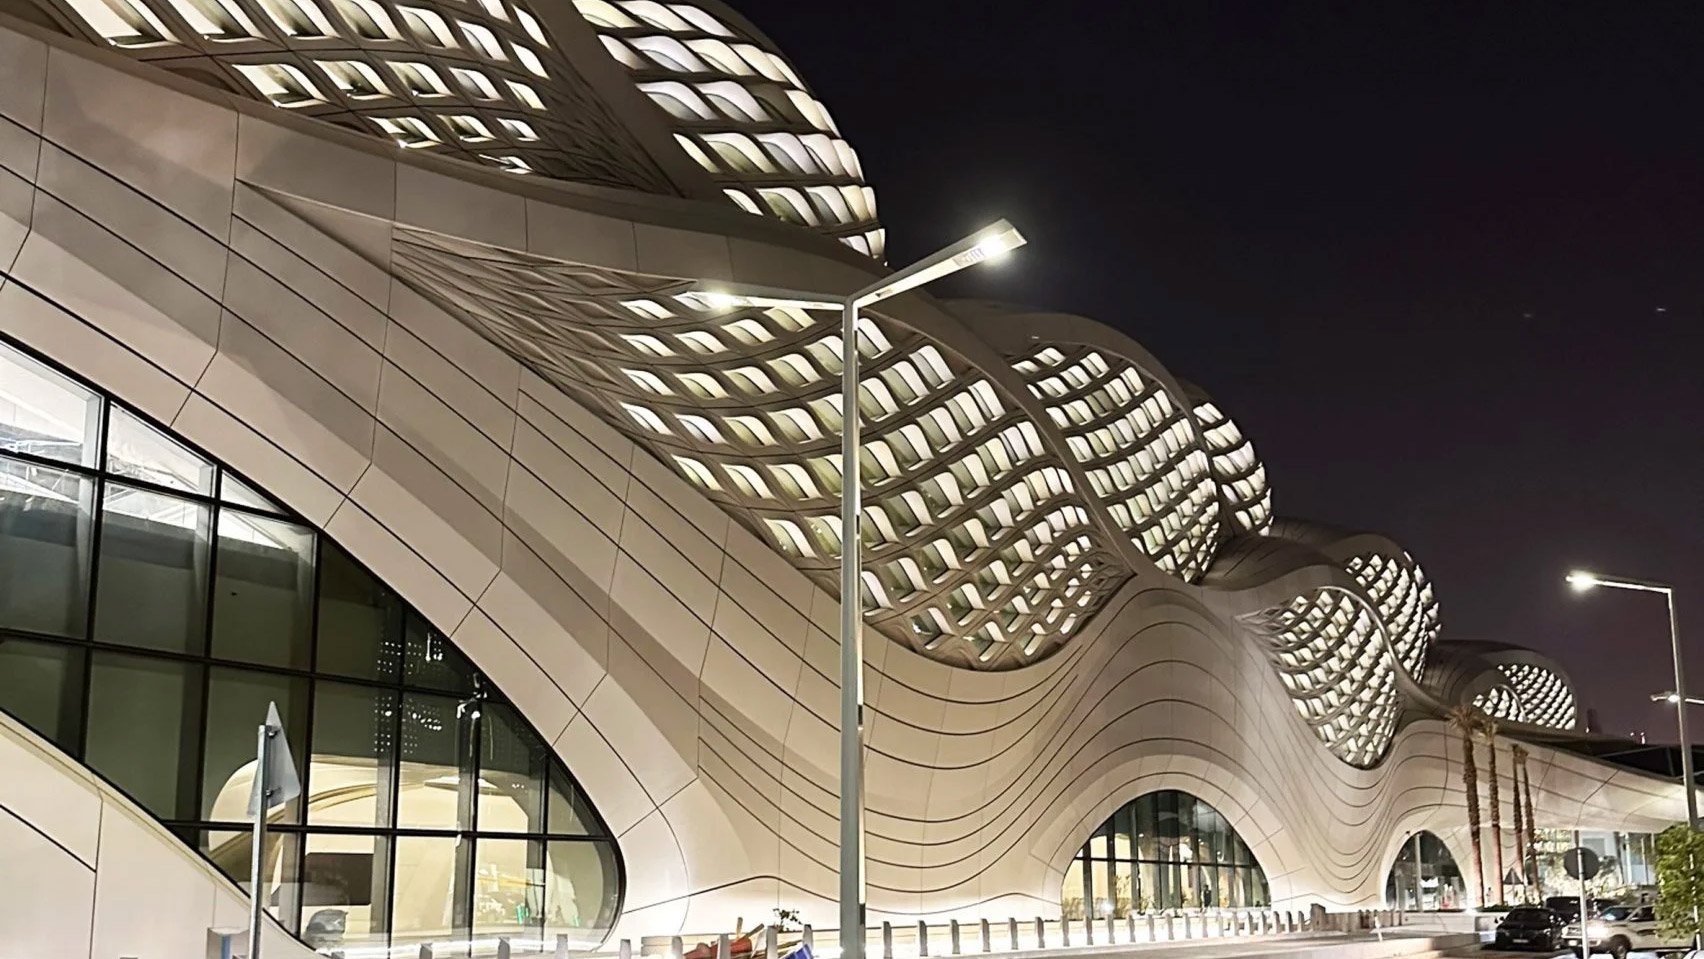 Извилистая станция метро Zaha Hadid Architects близится к завершению в Эр-Рияде